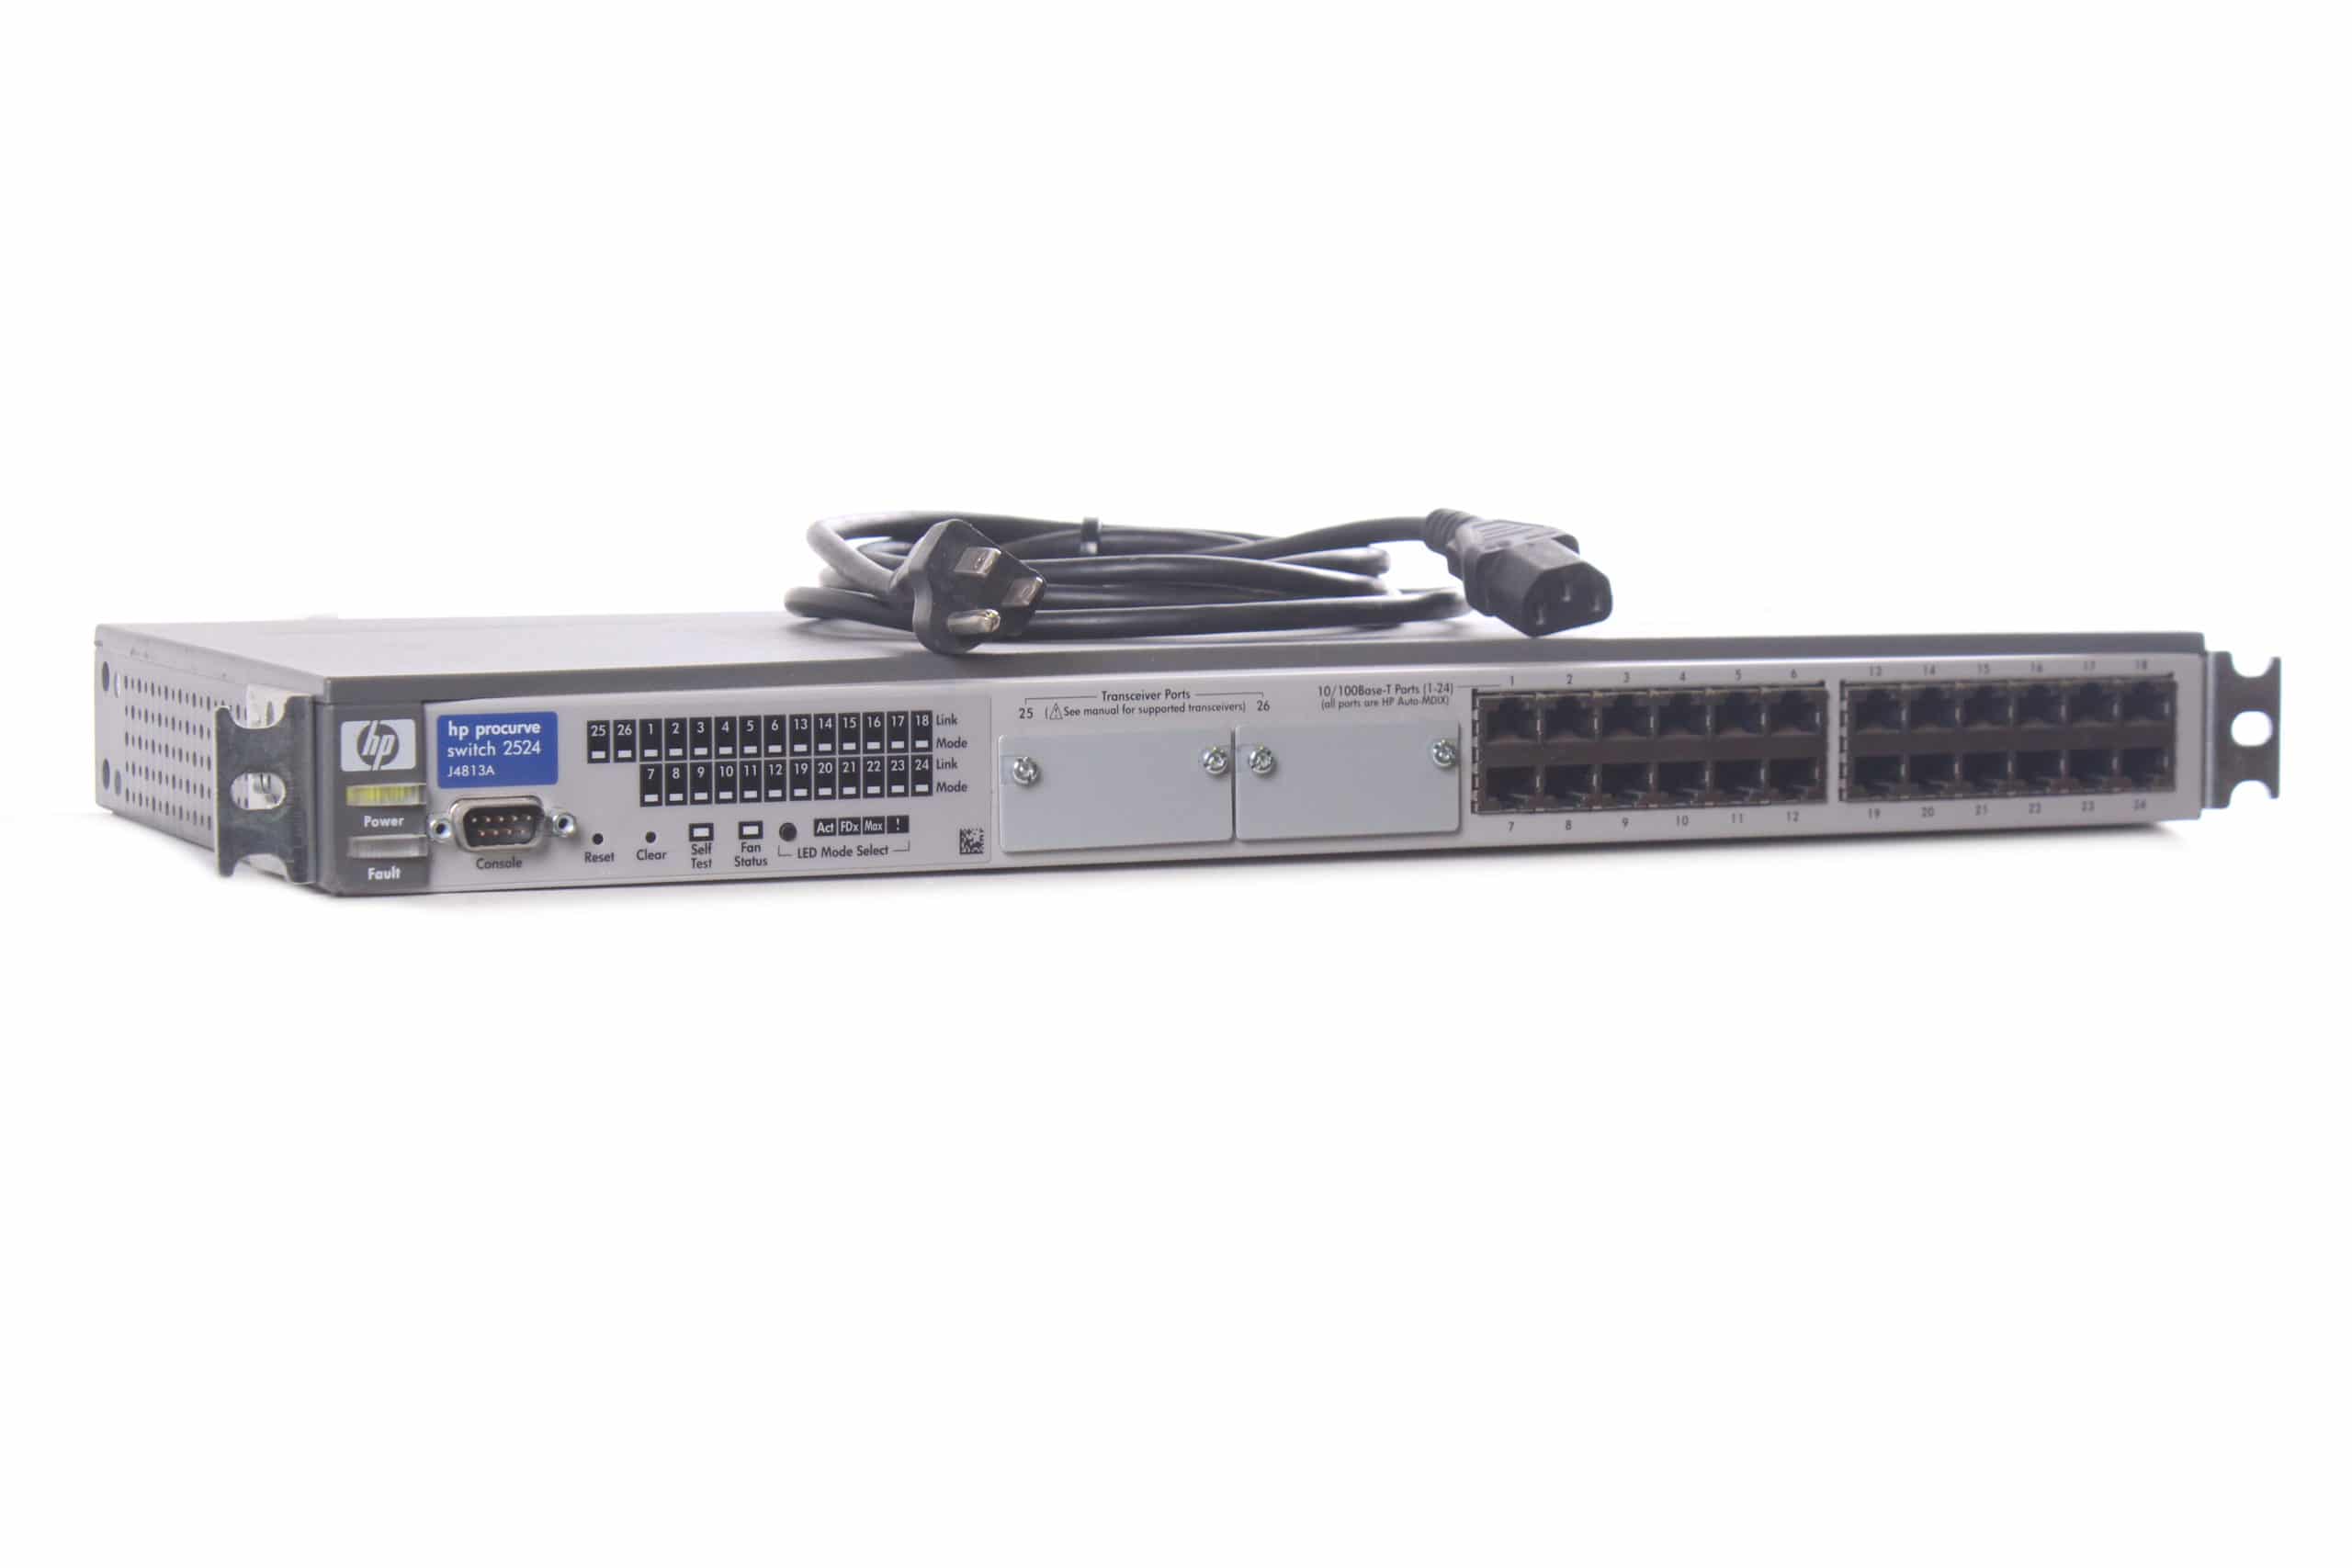 HP ProCurve 2524 J4813A 24-Port Network Switch w/ Rack Ears · AV Gear